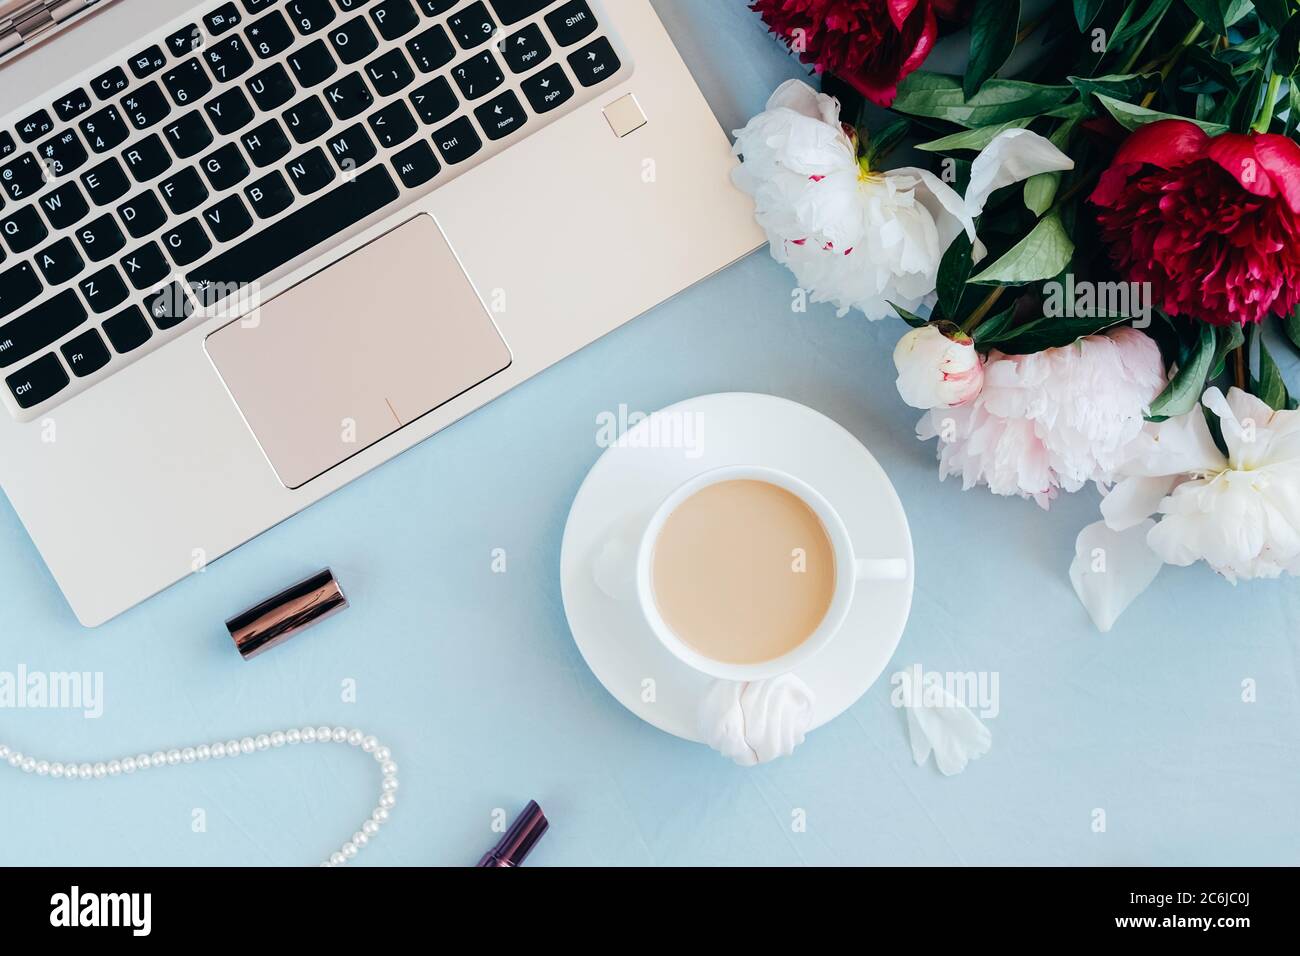 Espace de travail féminin avec ordinateur portable, tasse de café, rouge à  lèvres, collier de perles et fleurs de pivoine sur fond bleu. Femme dans le  concept d'affaires. Flat lay, vue de